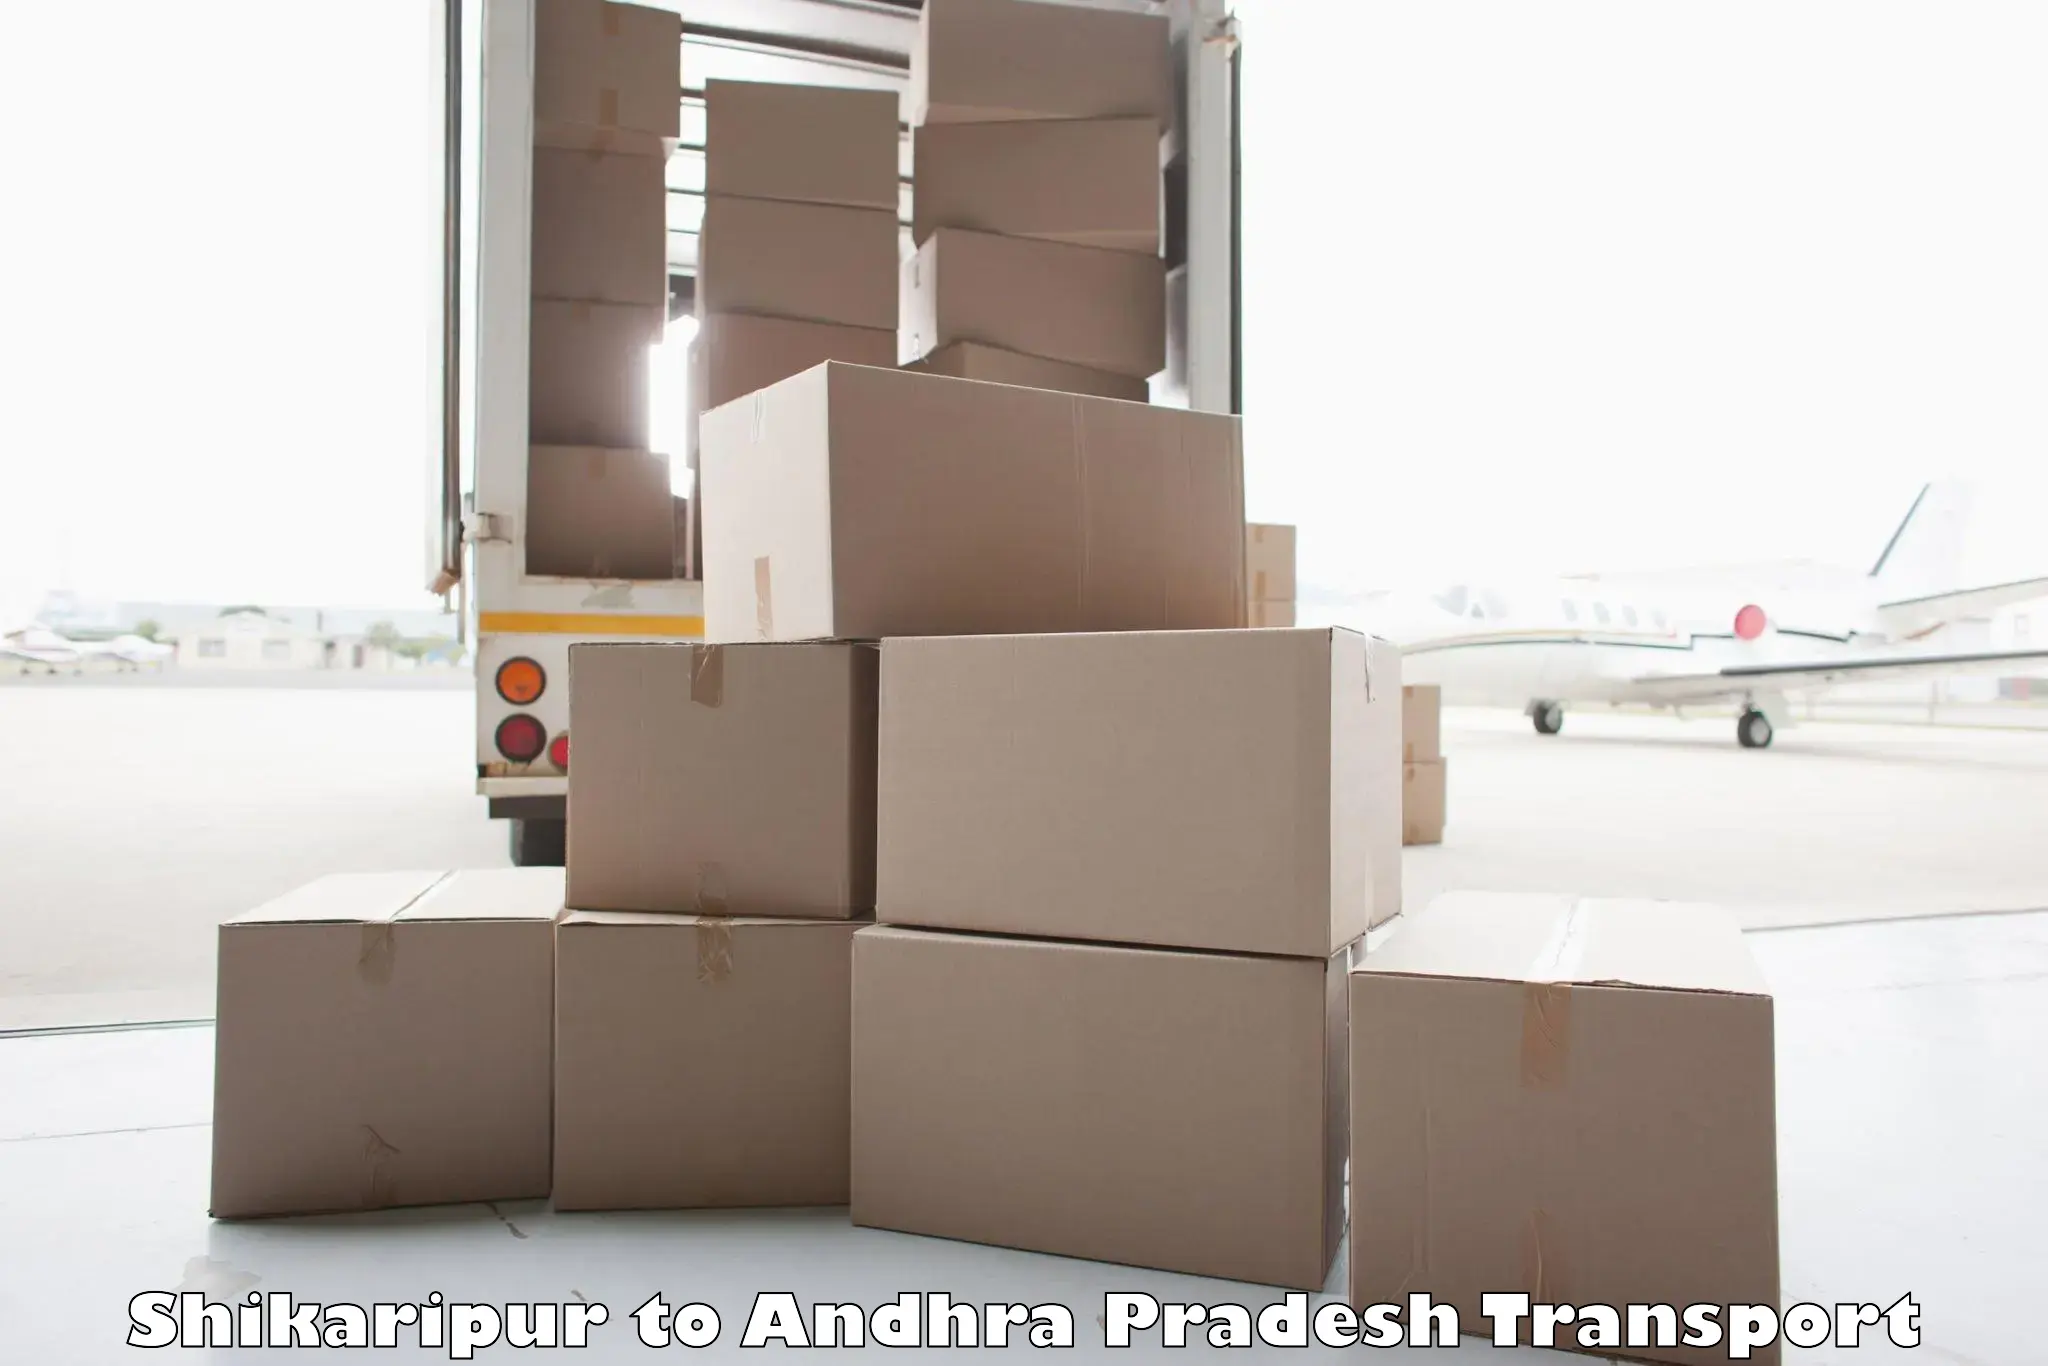 Lorry transport service Shikaripur to Chintalapudi